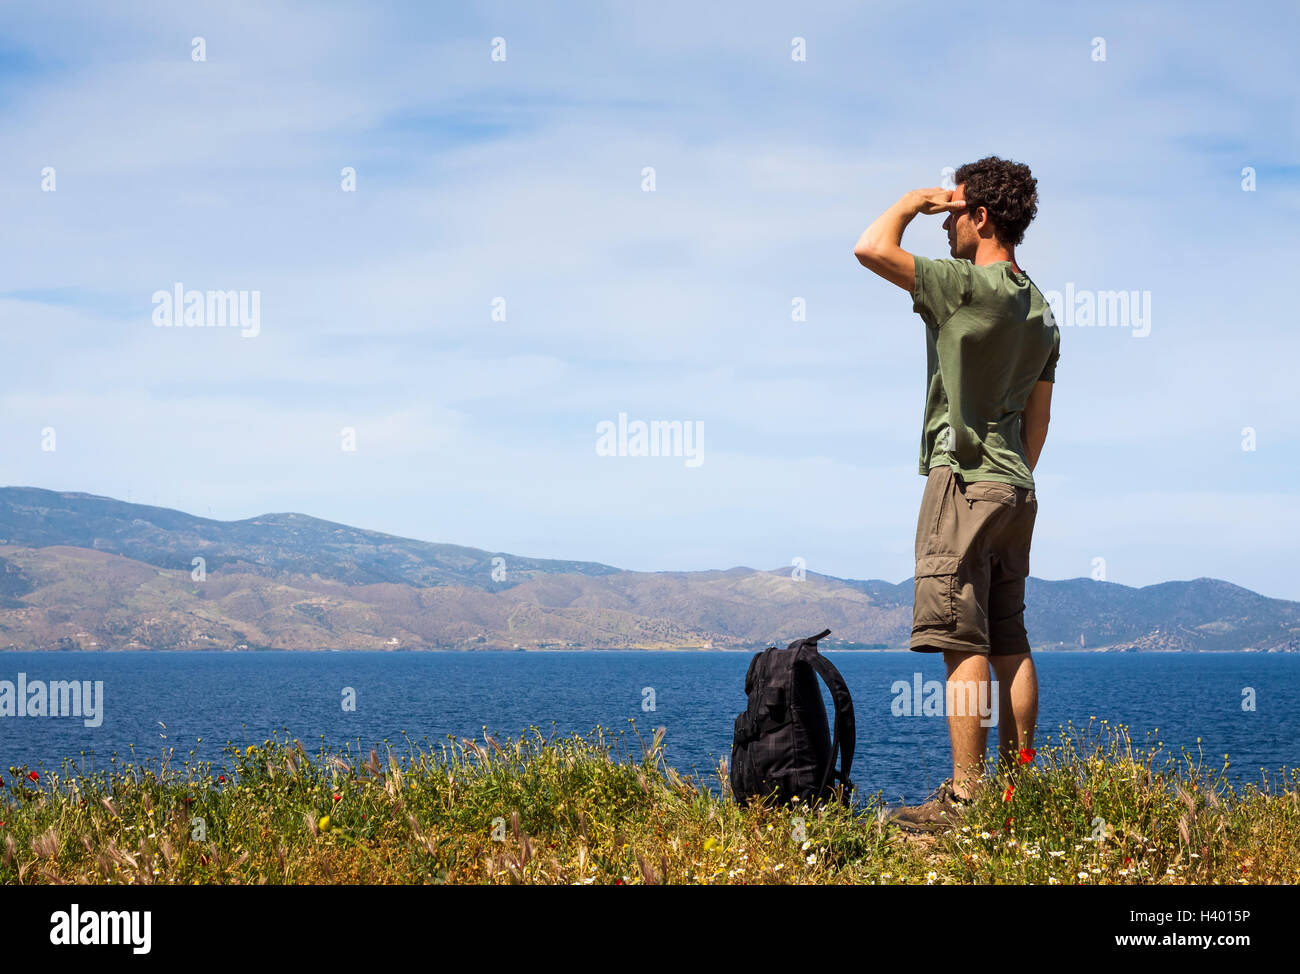 Excursionista con mochila disfrutando de la hermosa vista del mar desde la isla griega de Hydra, copyspace Foto de stock